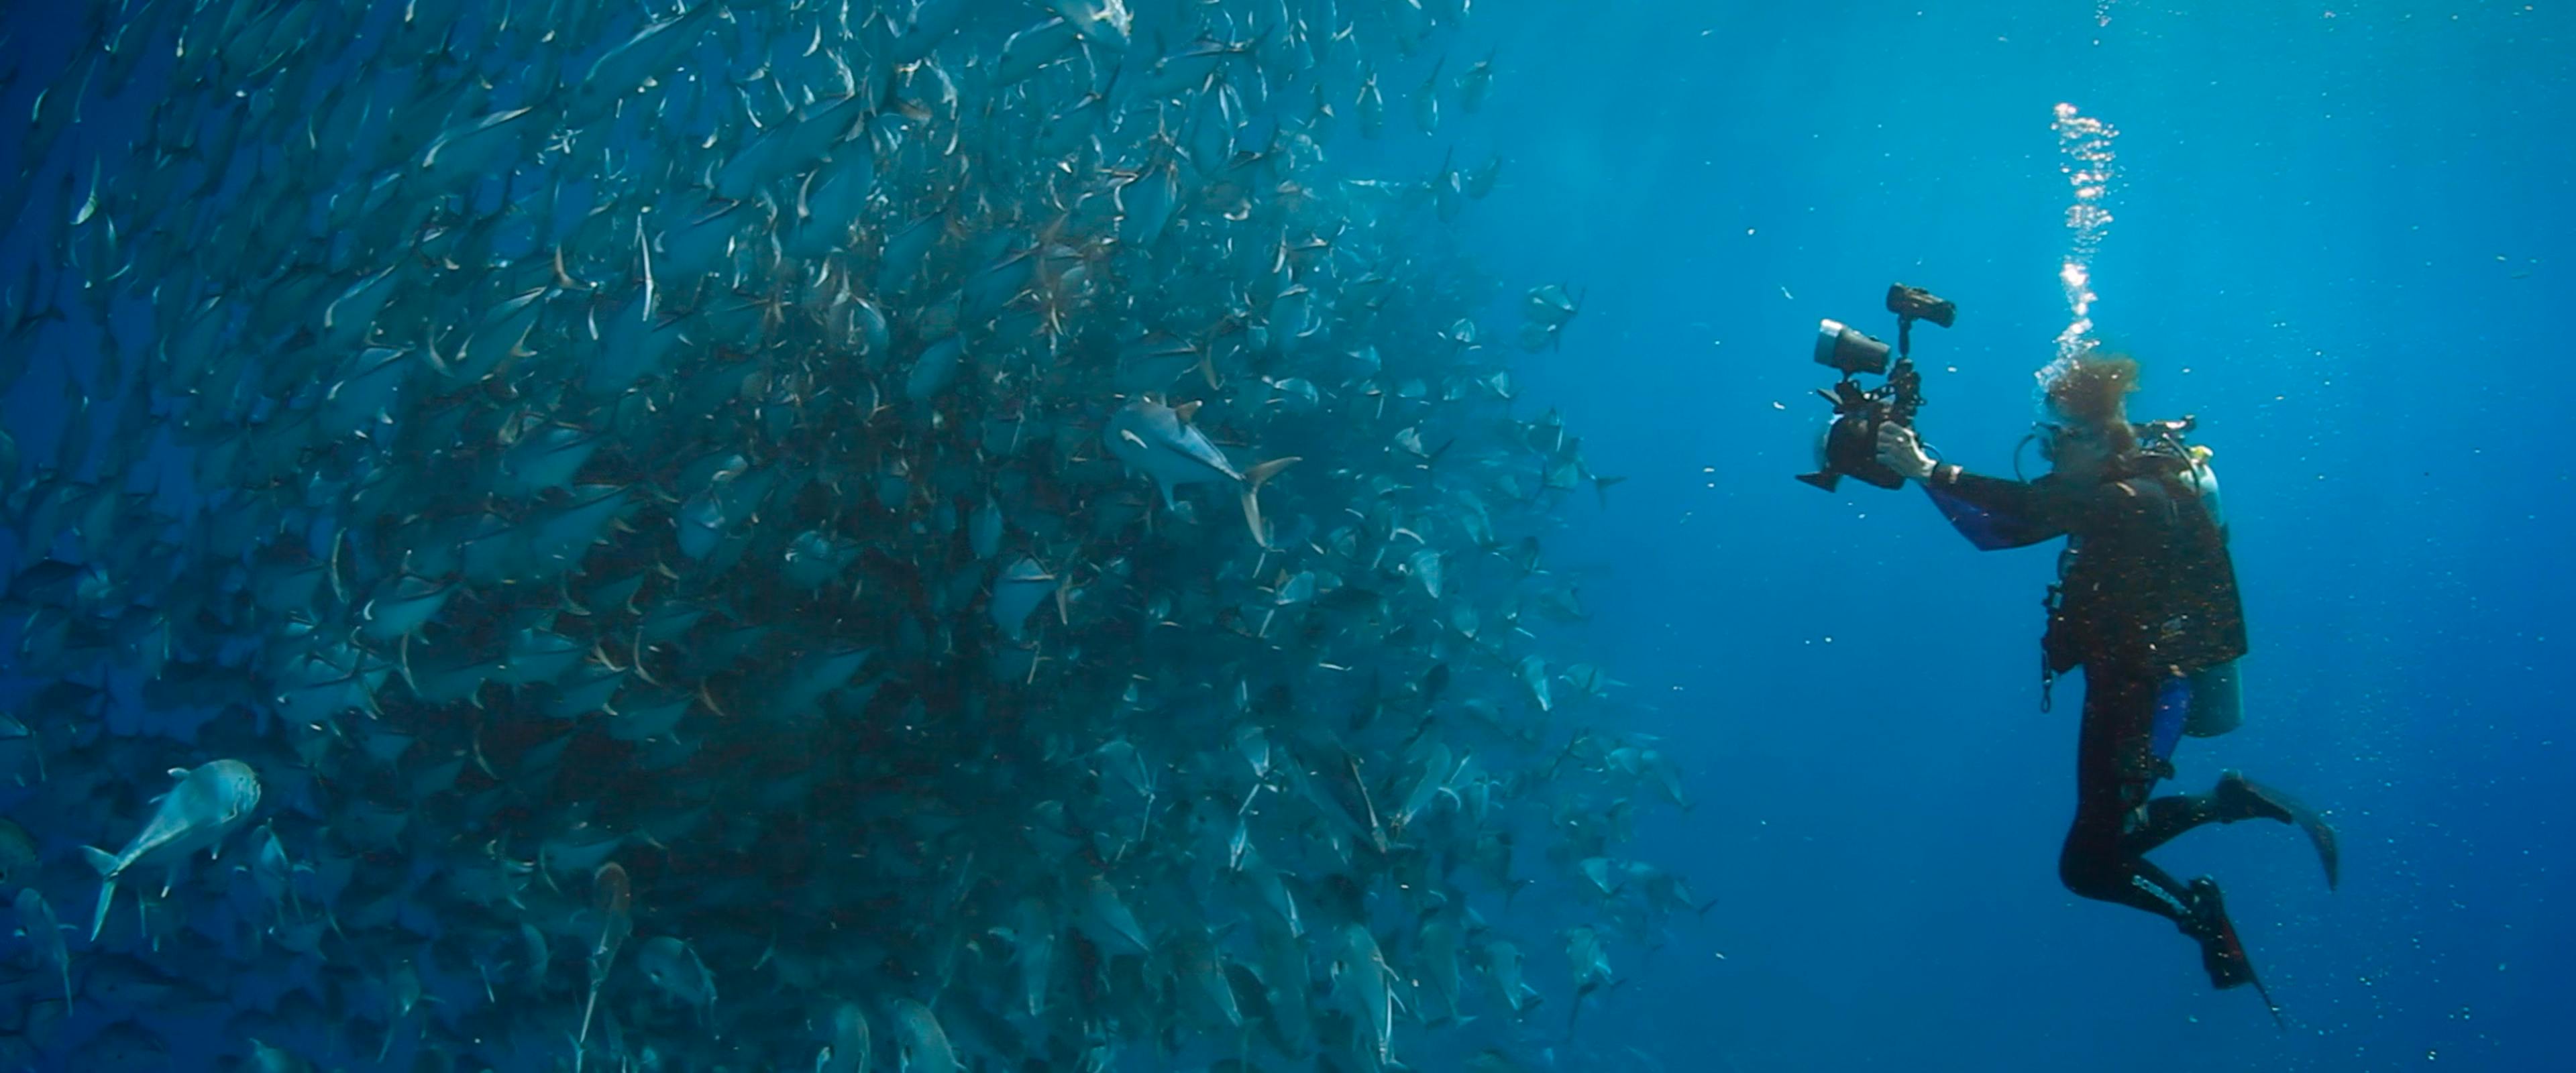 Ein Taucher fotografiert unterwasser einen großen Fischschwarm